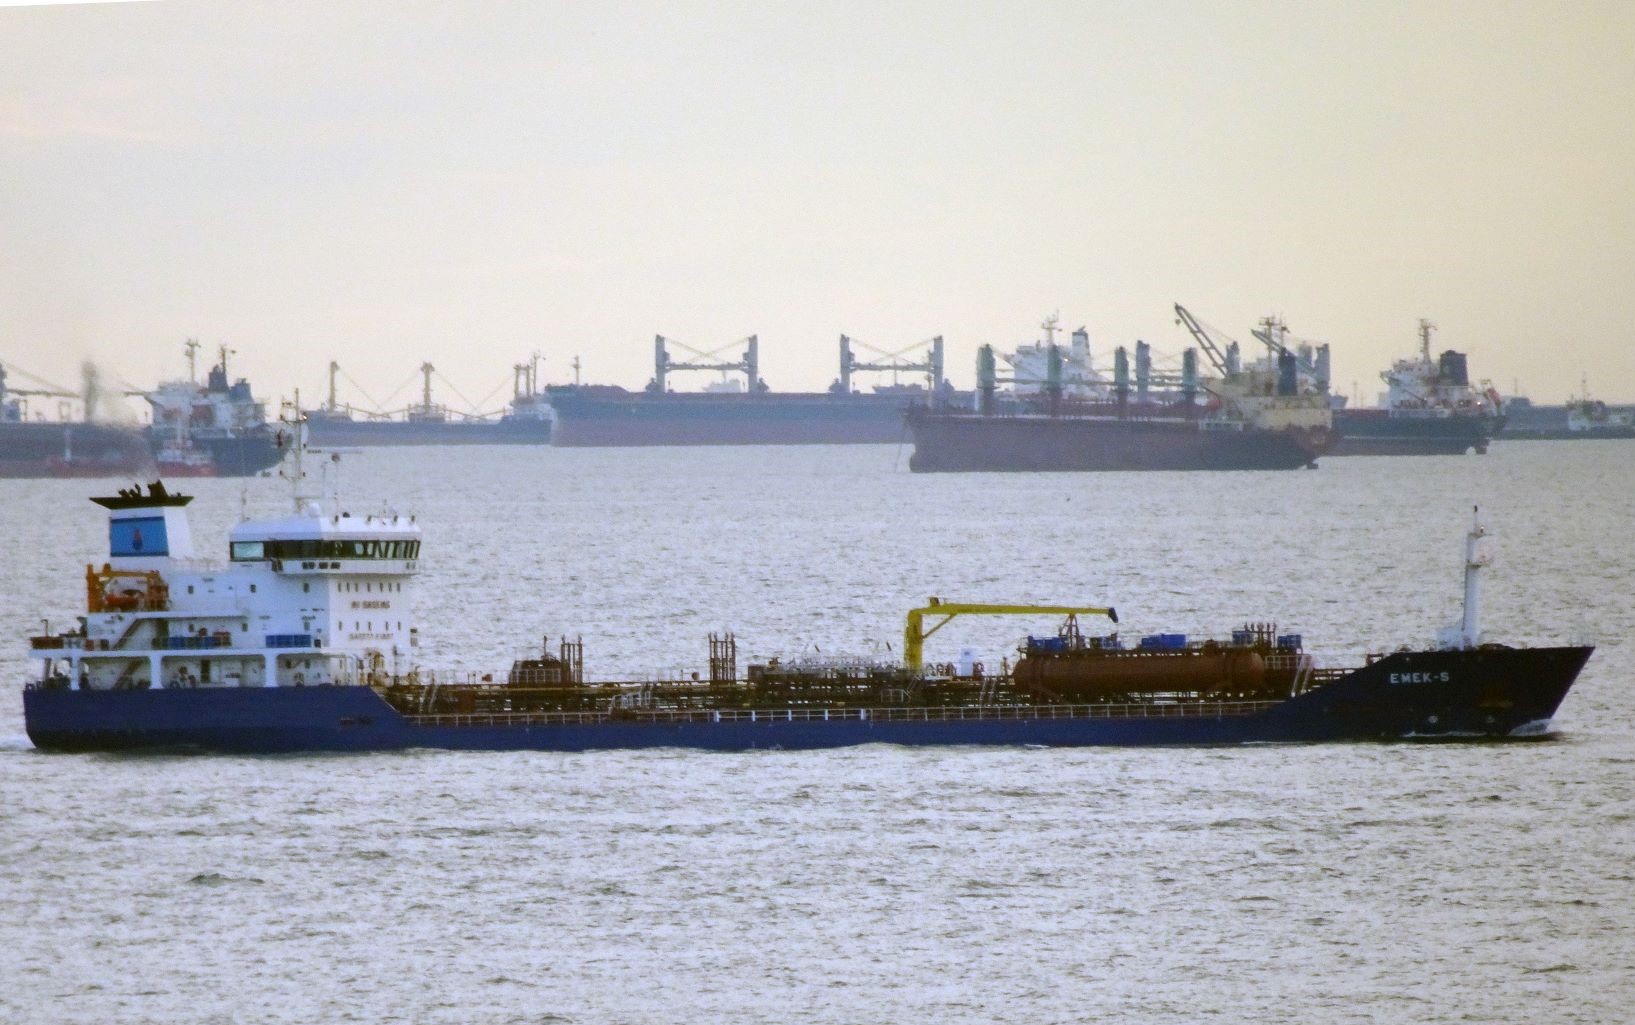 Base oil tanker